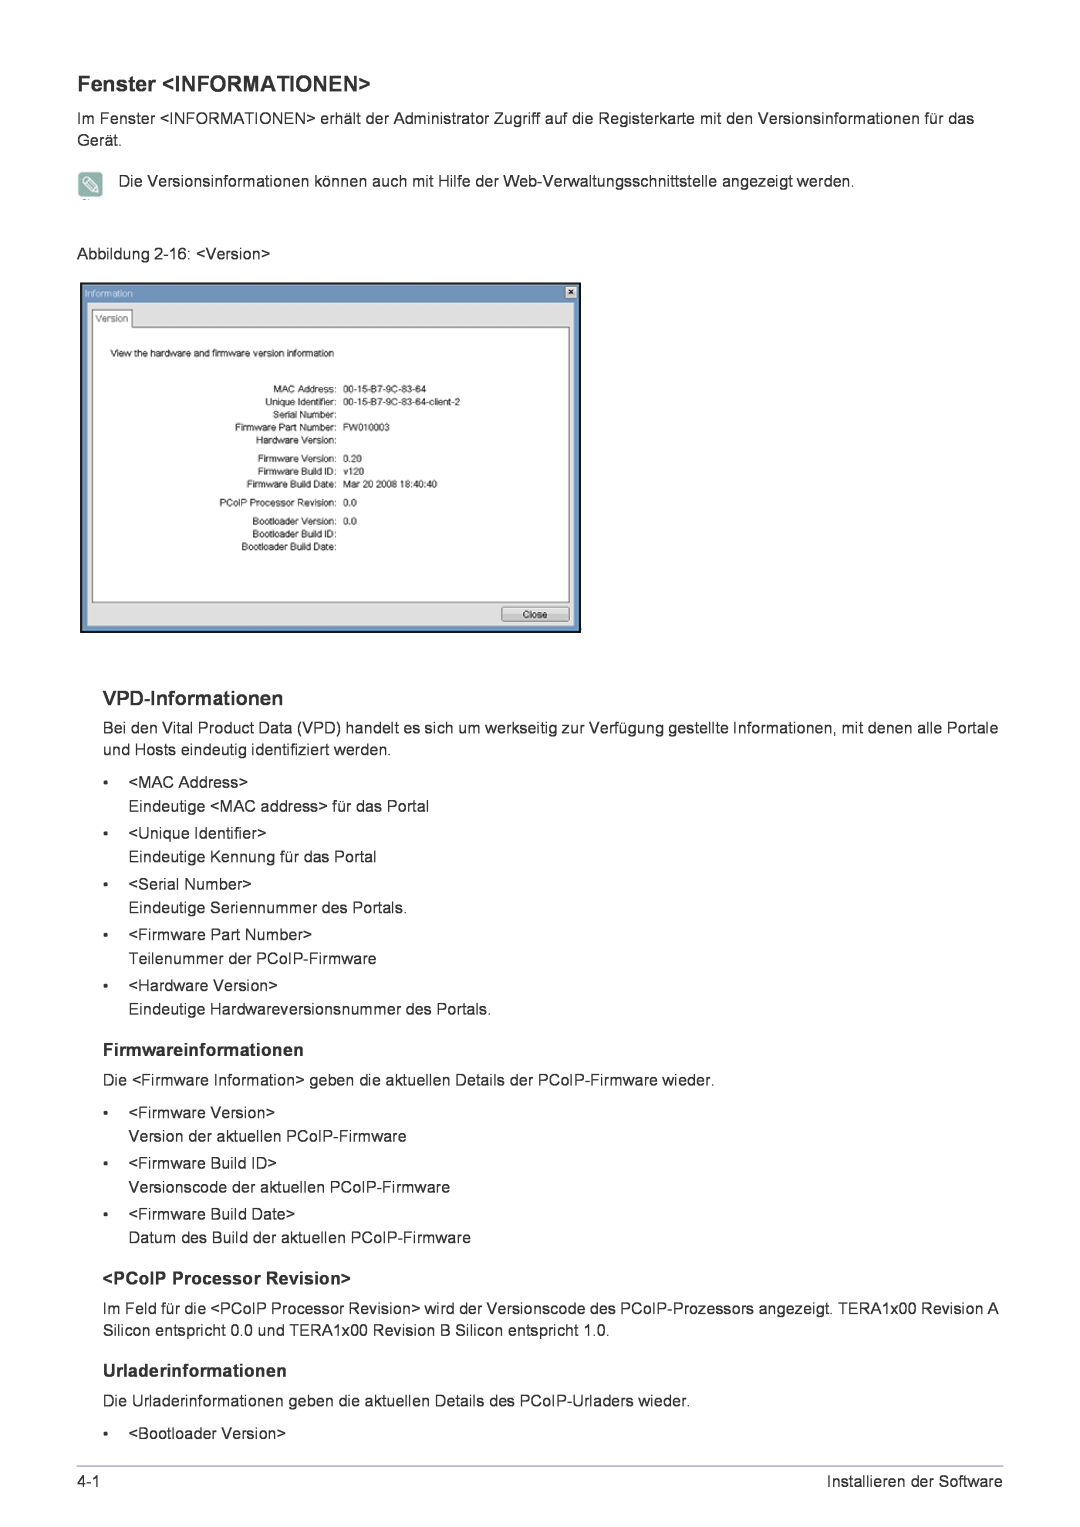 Samsung LF22NPBHBNP/EN manual Fenster INFORMATIONEN, VPD-Informationen, Firmwareinformationen, PCoIP Processor Revision 